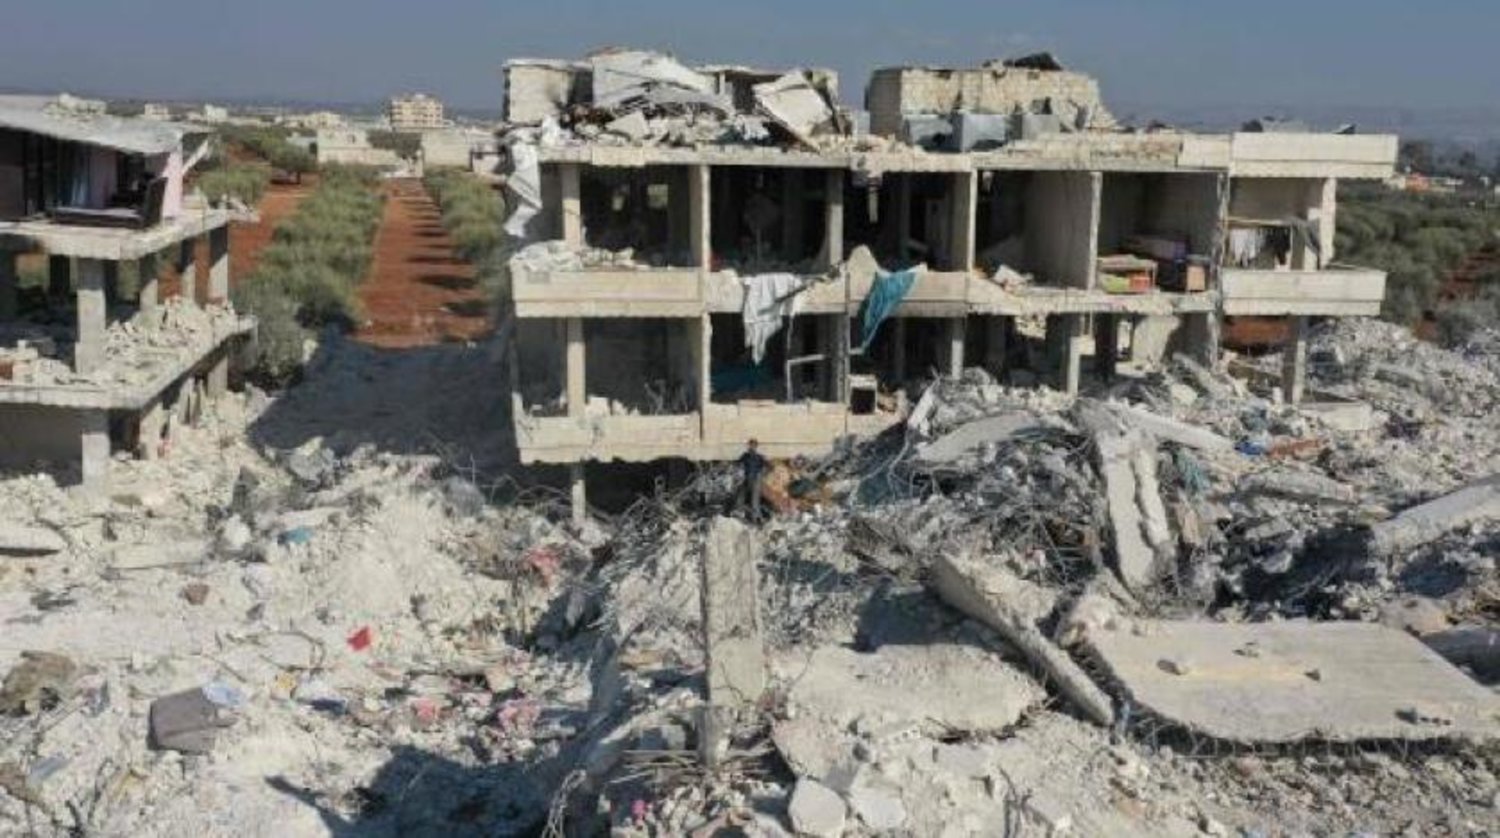 Suriye'de meydana gelen depremde ölü sayısı 6 bine yaklaştı (EPA)
